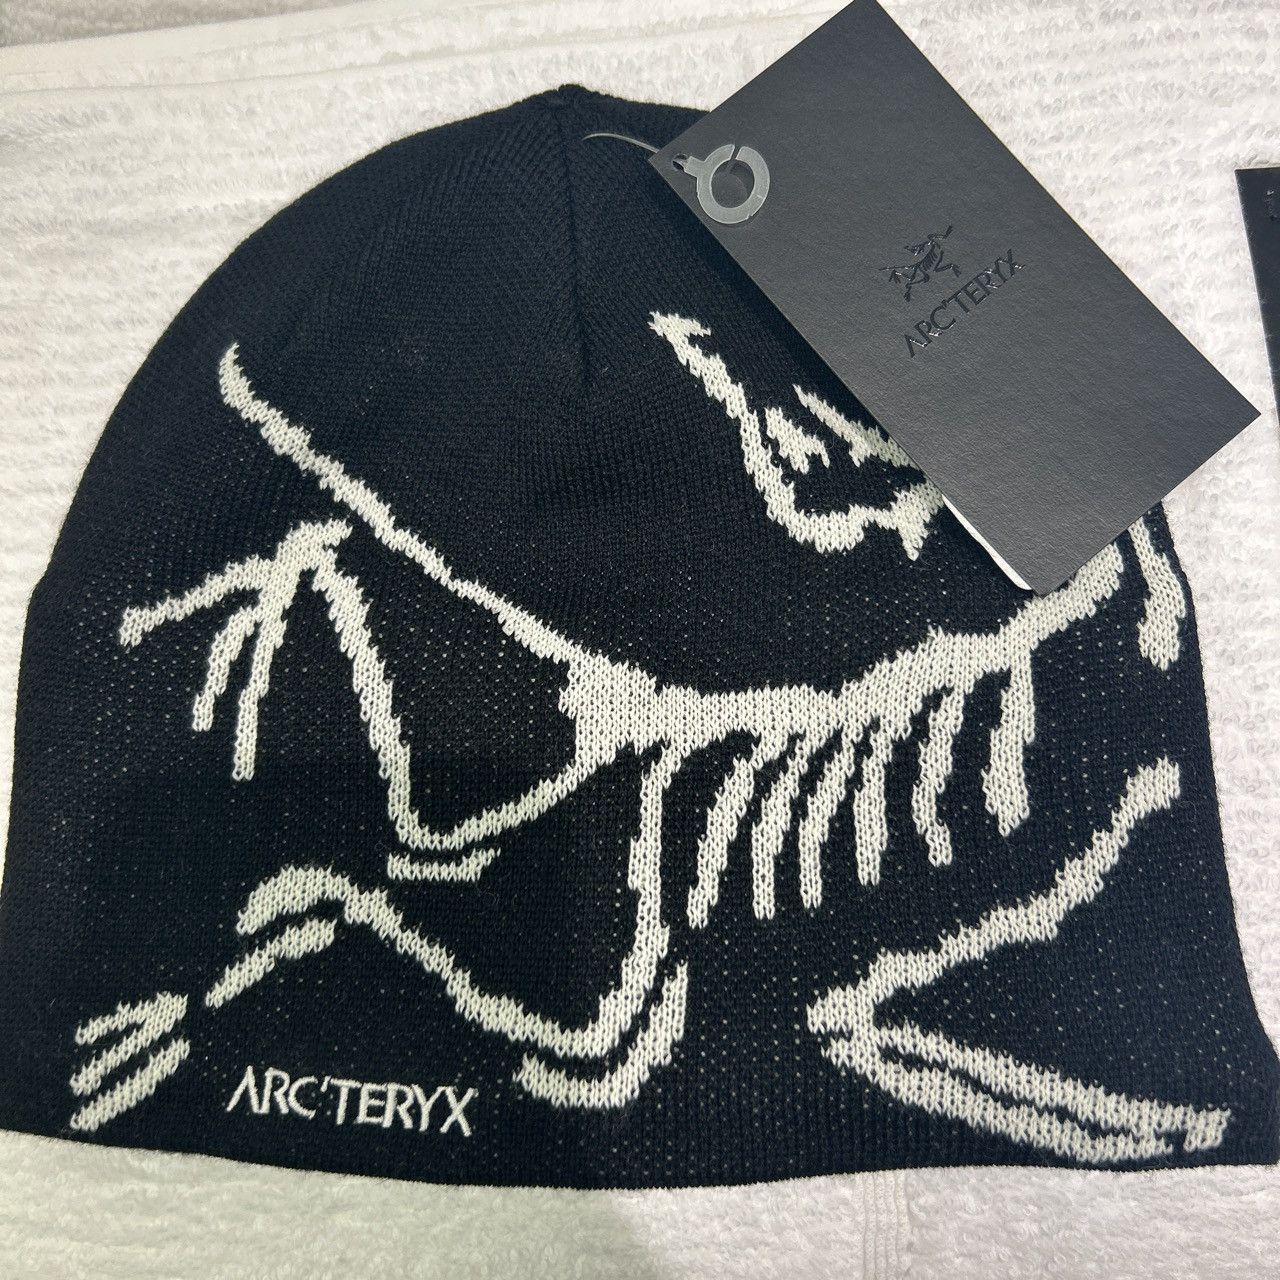 Arc'Teryx Arcteryx black/white skeleton beanie | Grailed